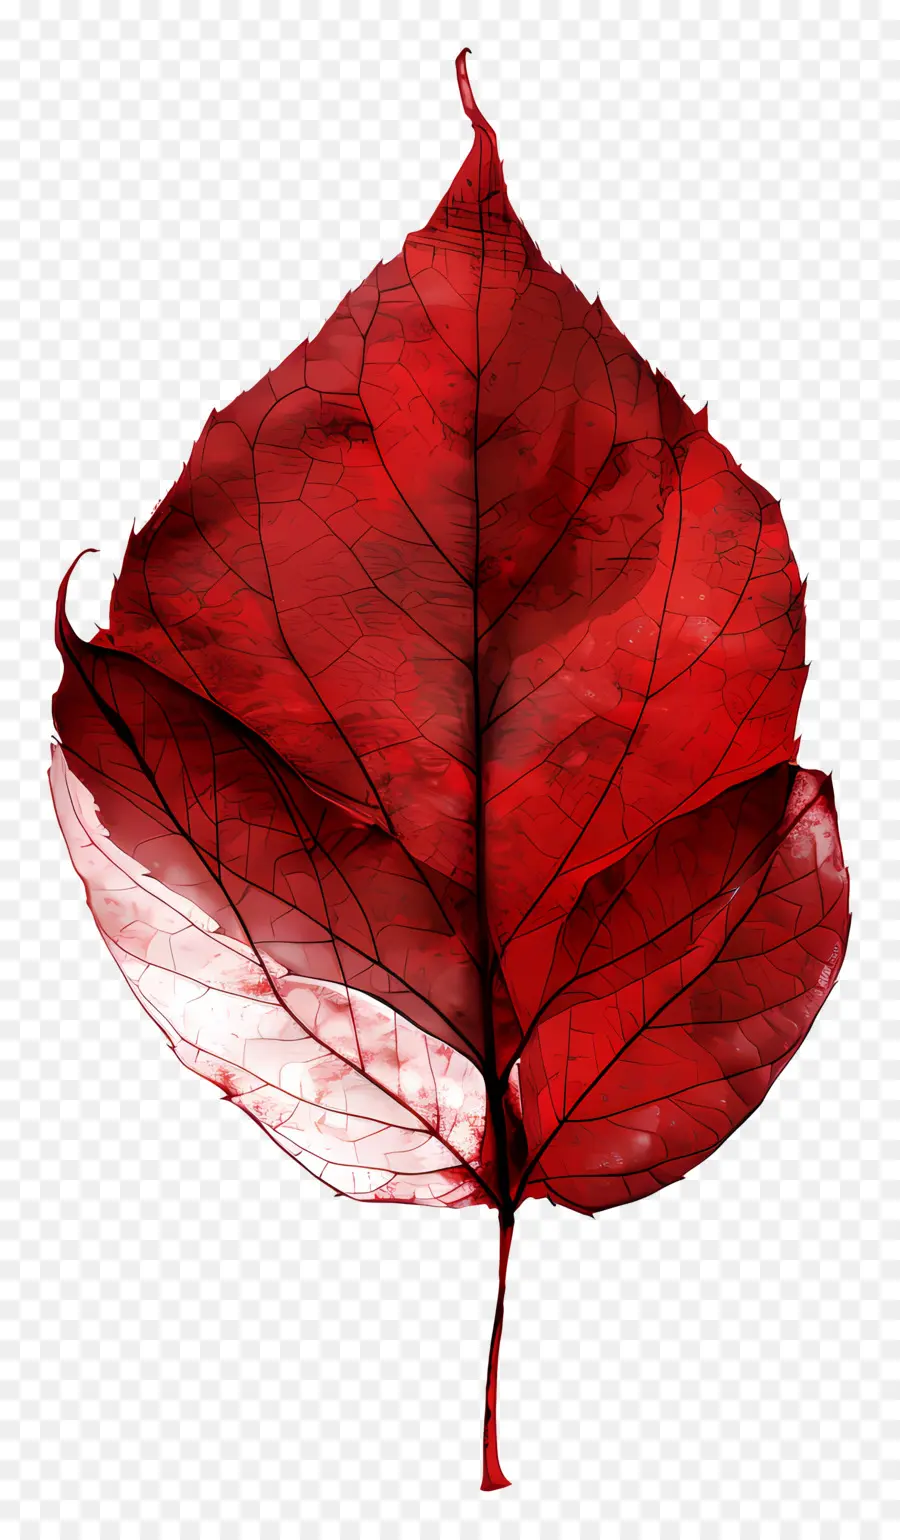 lá đỏ lá đỏ thân cây màu trắng - Lá đỏ với các tĩnh mạch có thể nhìn thấy, sáng bóng, phản chiếu. 
Bầu không khí tối